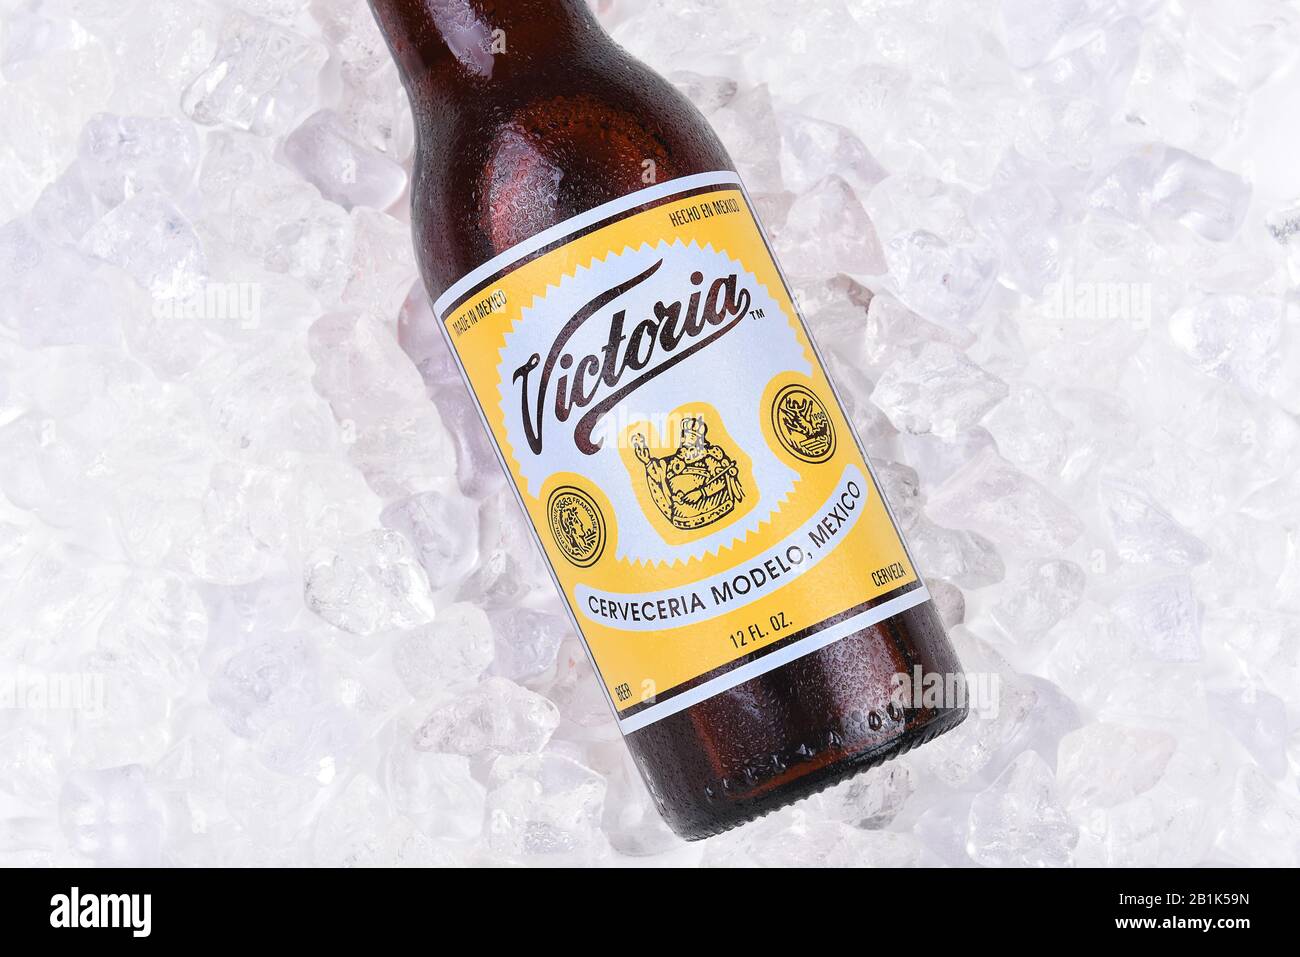 Irvine, CA - 26. AUGUST 2016: Eine Flasche Victoria-Bier auf Eis. Victoria ist ein Bier im Wiener Lagerstil, das von der Grupo Modelo S.A., Mexiko, gebraut wird. Stockfoto